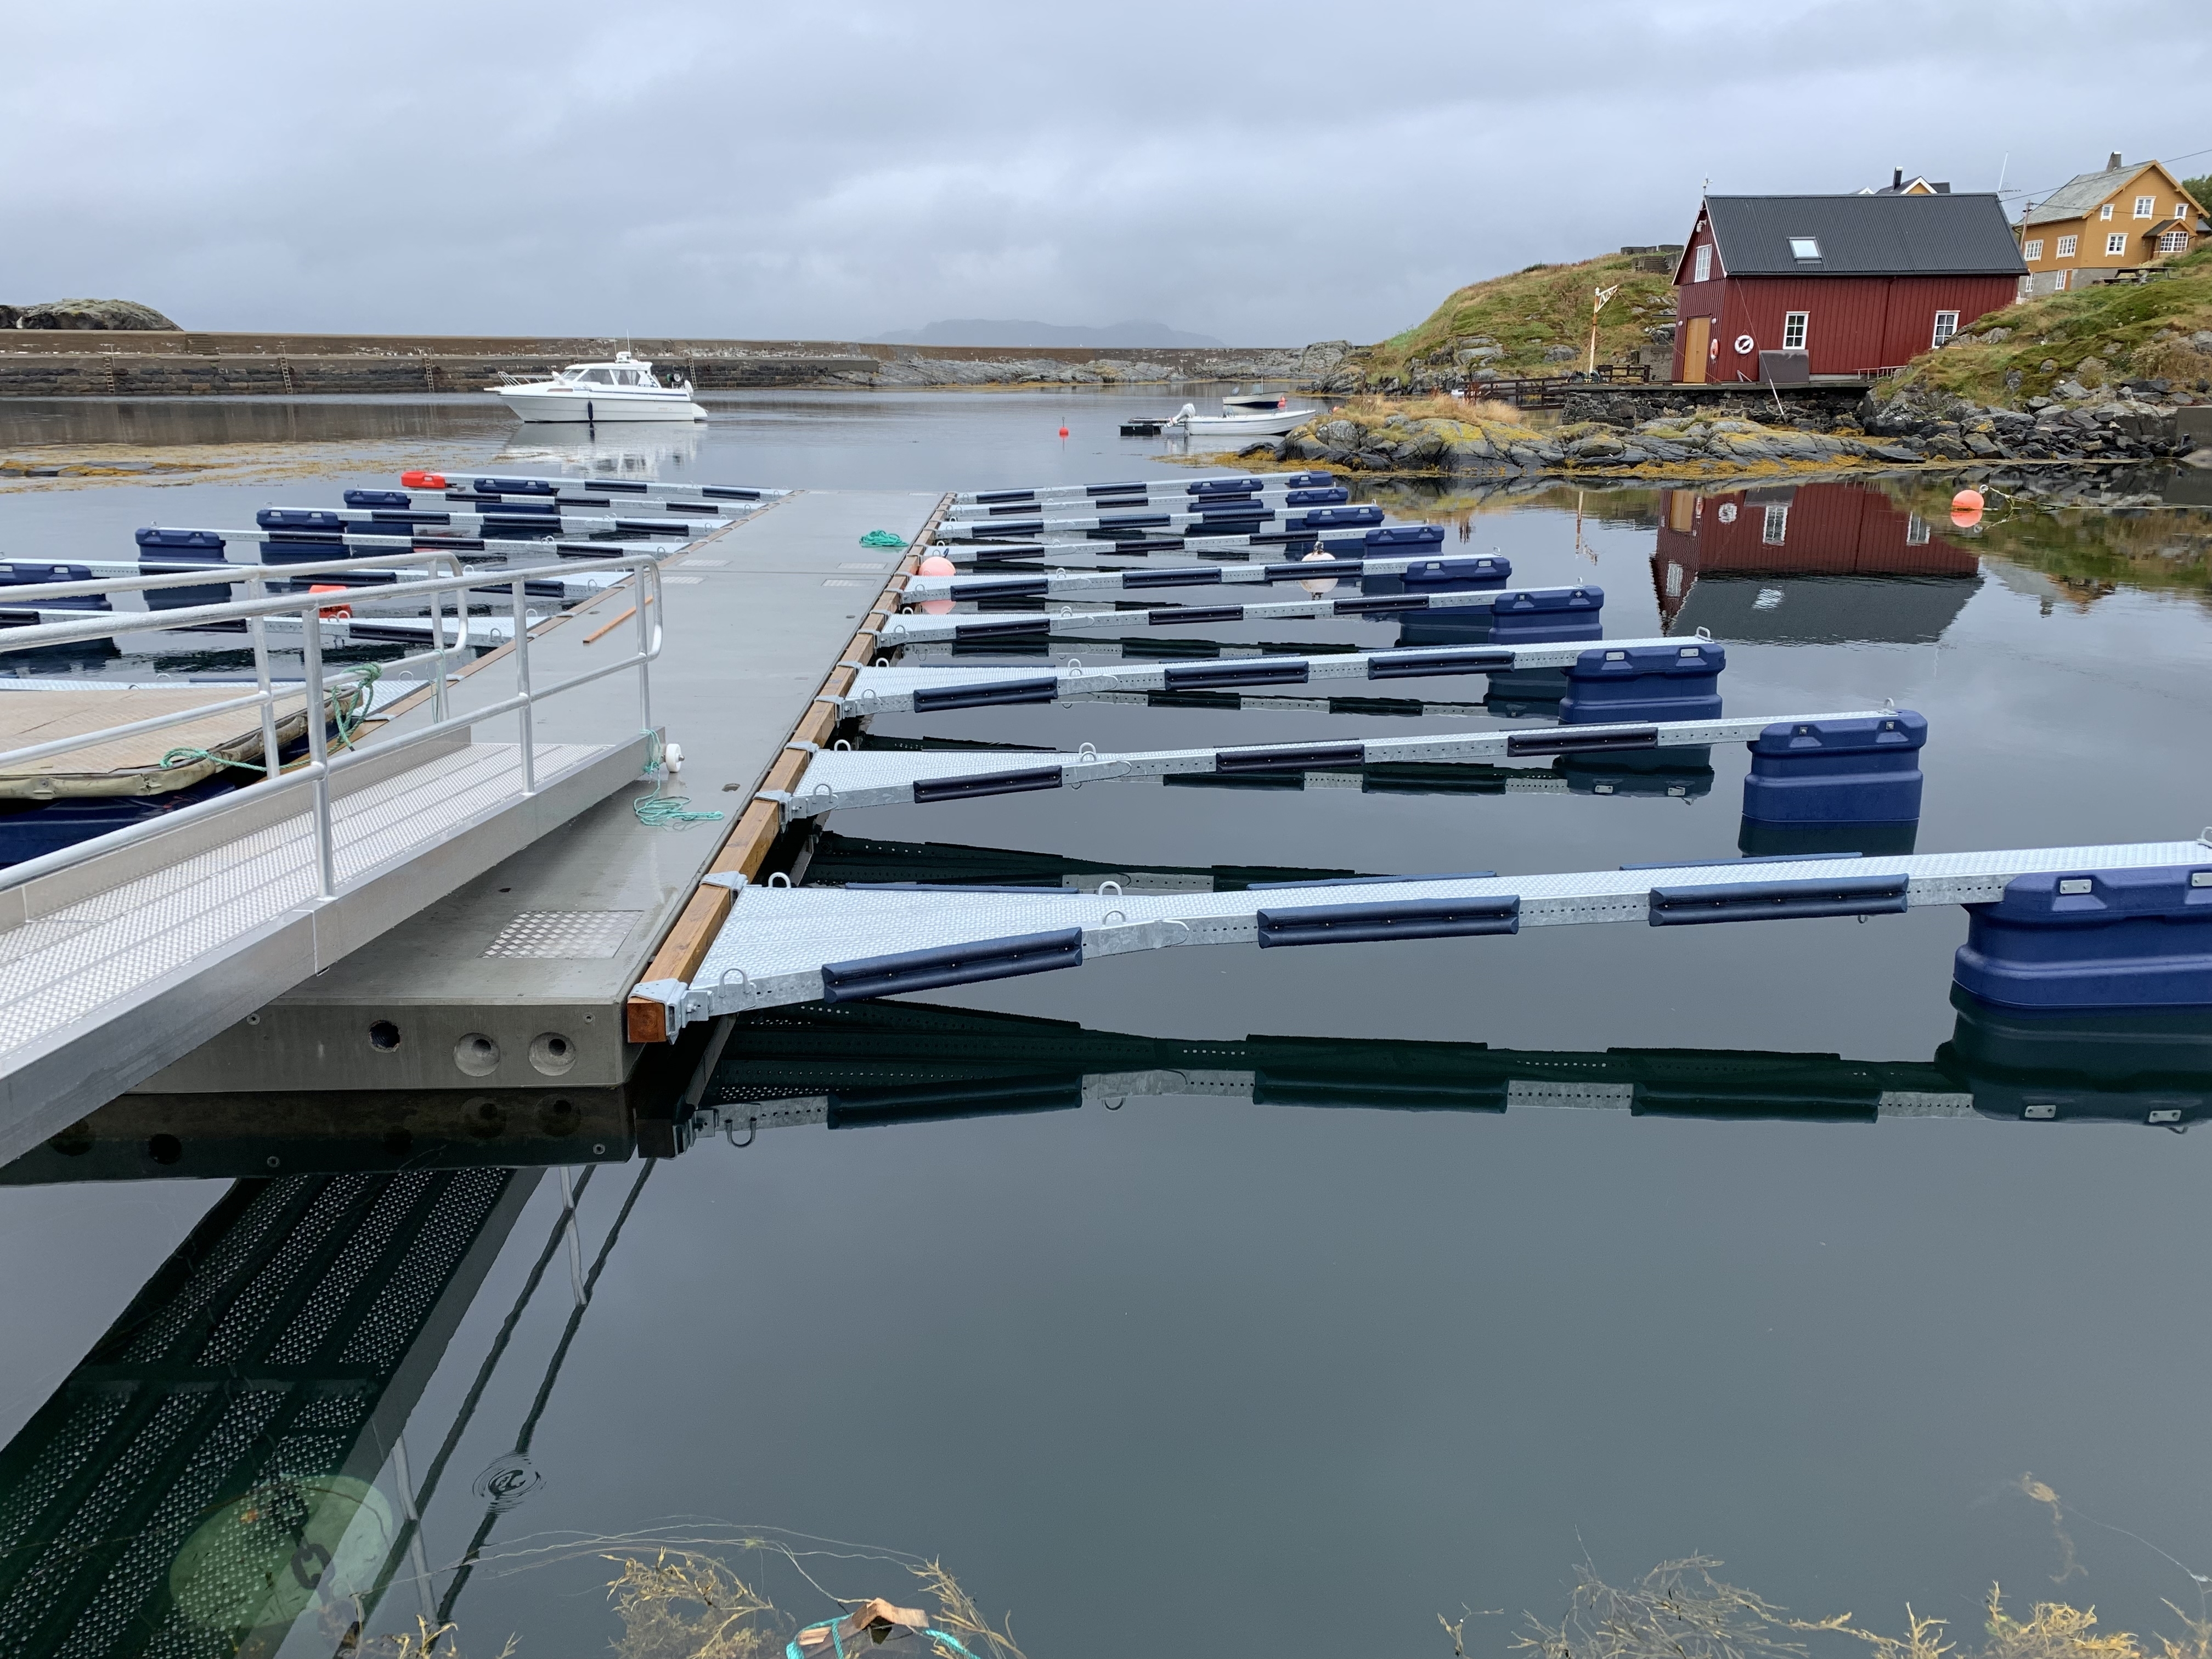 https://marinasolutions.no/uploads/Hamnaberget-småbåtforening-nordre-bjørnsund-marina-solutions-betongbrygger-sklisikre-utriggere-2.jpg